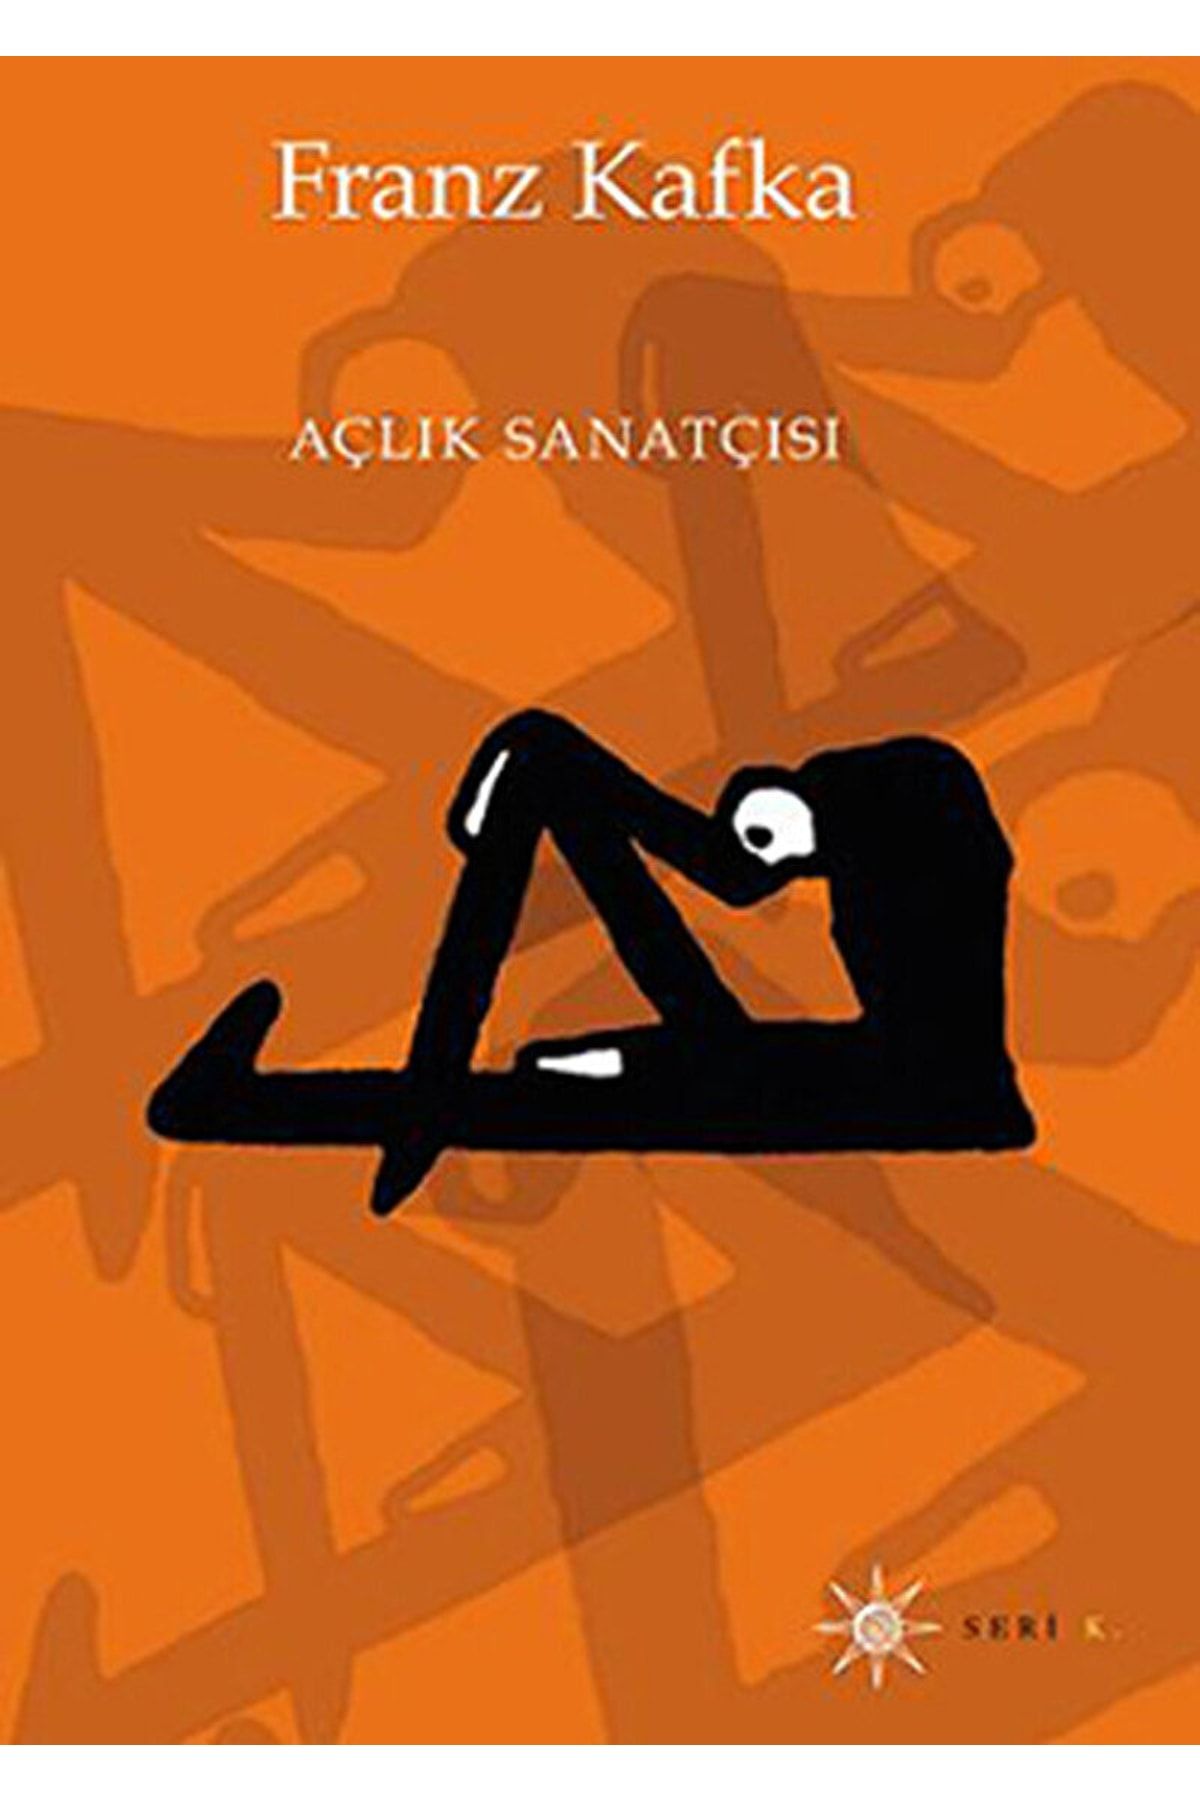 Altıkırkbeş Yayınları Açlık Sanatçısı / Franz Kafka / / 9786055532475